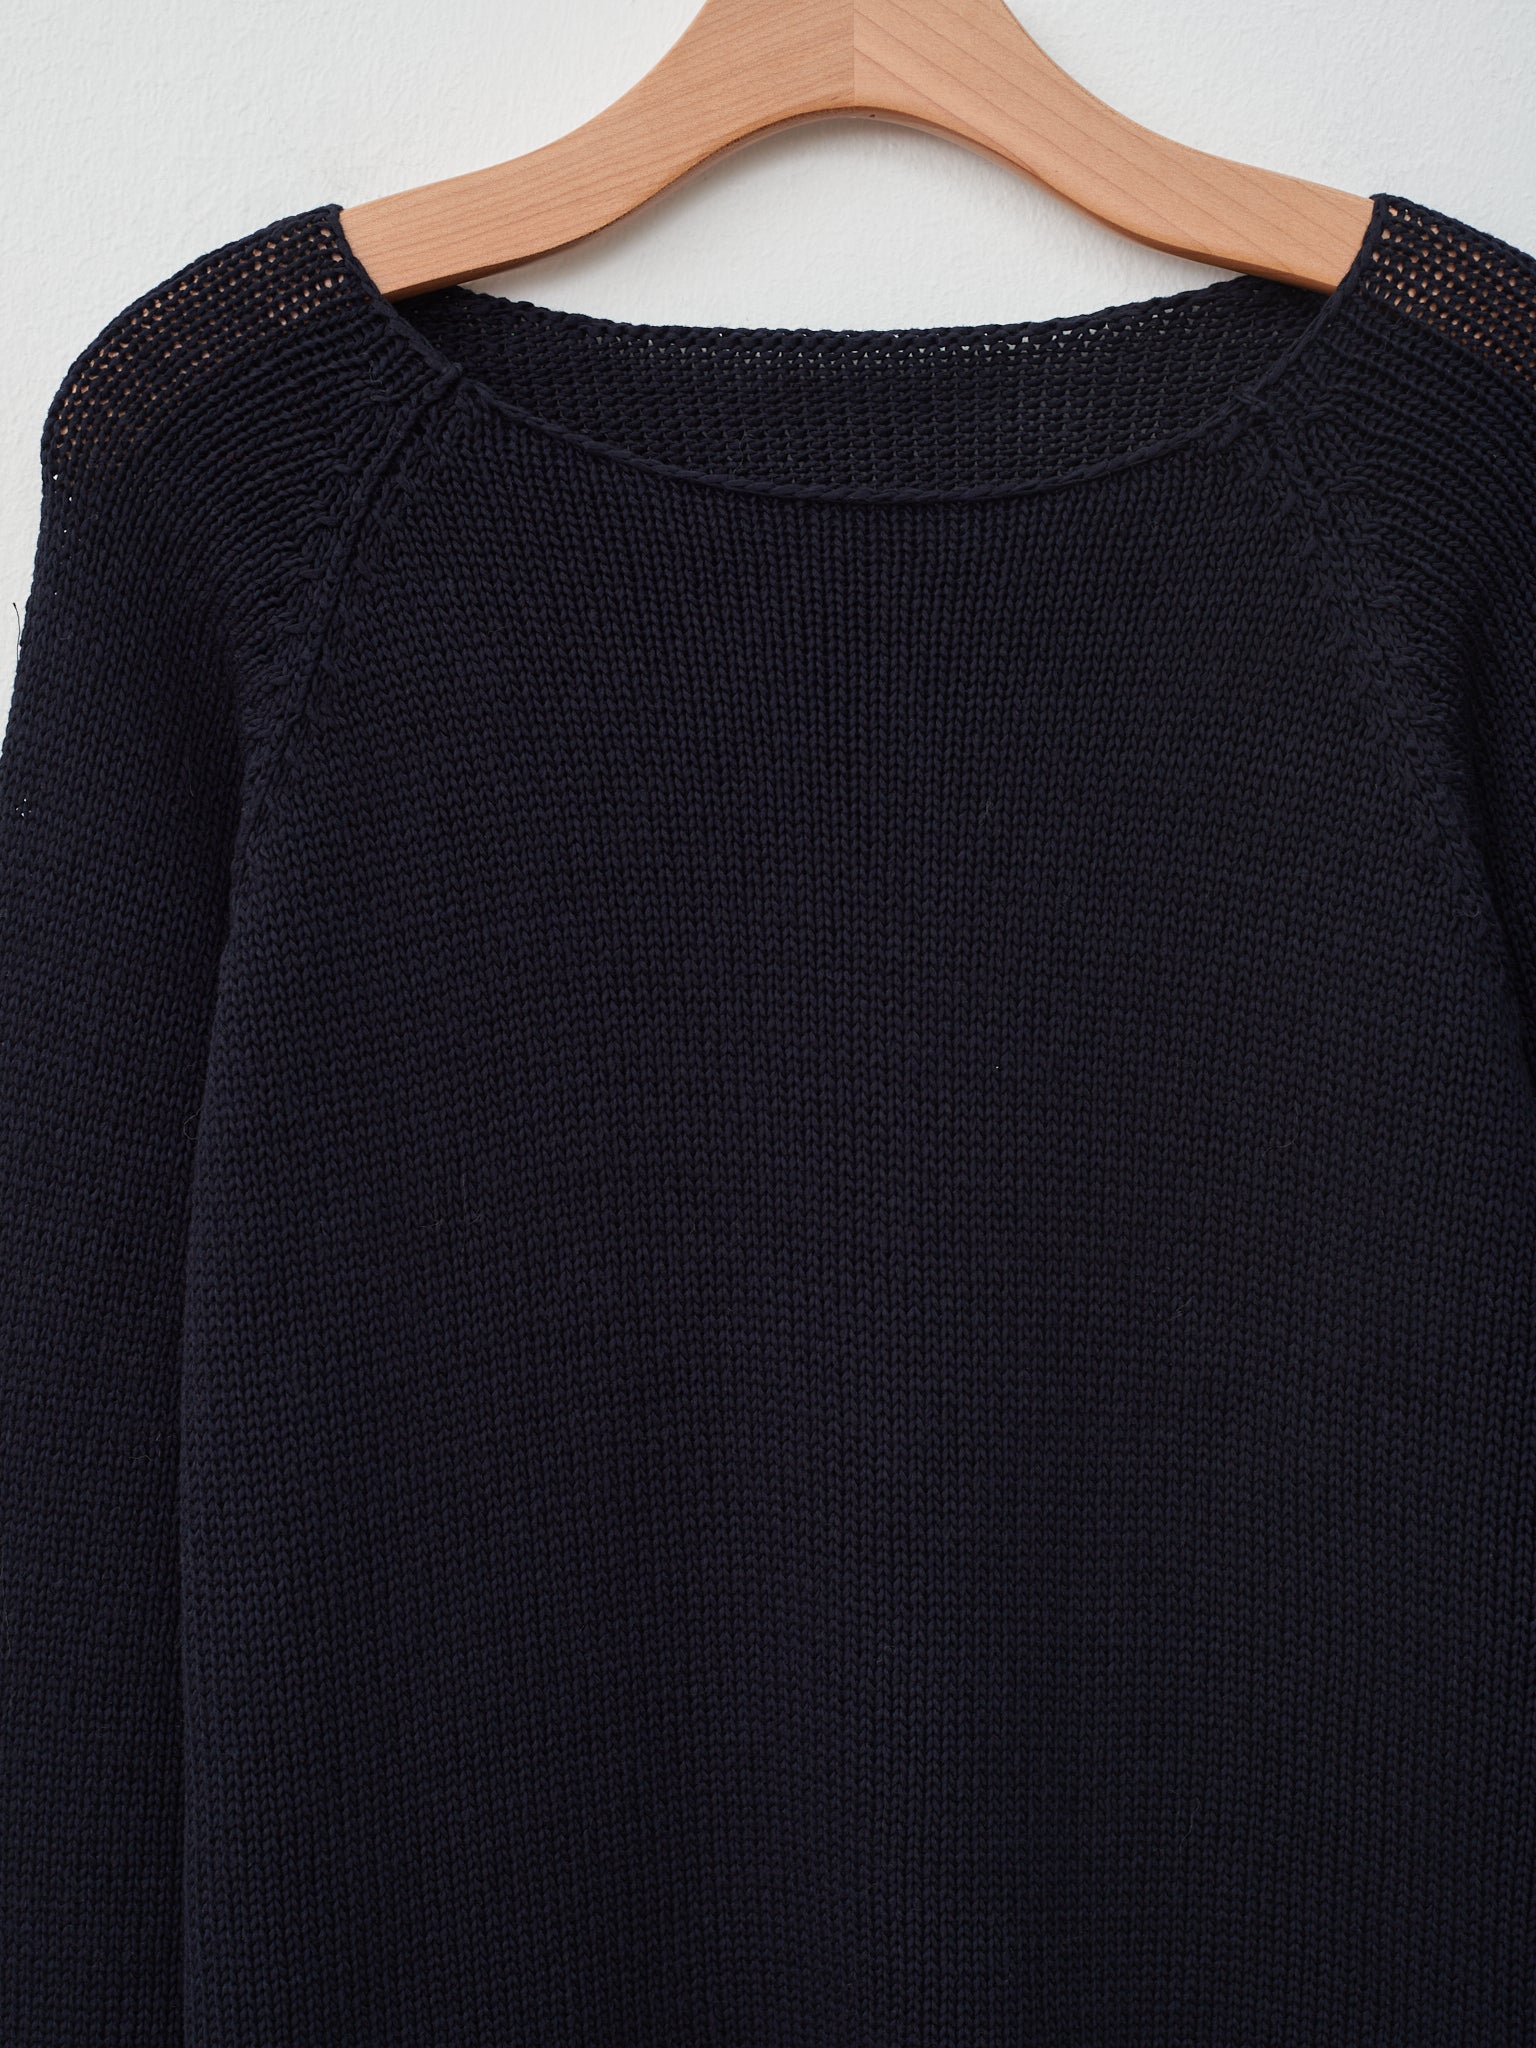 Namu Shop - Veritecoeur Cotton Silkette Pullover Knit - Dark Navy